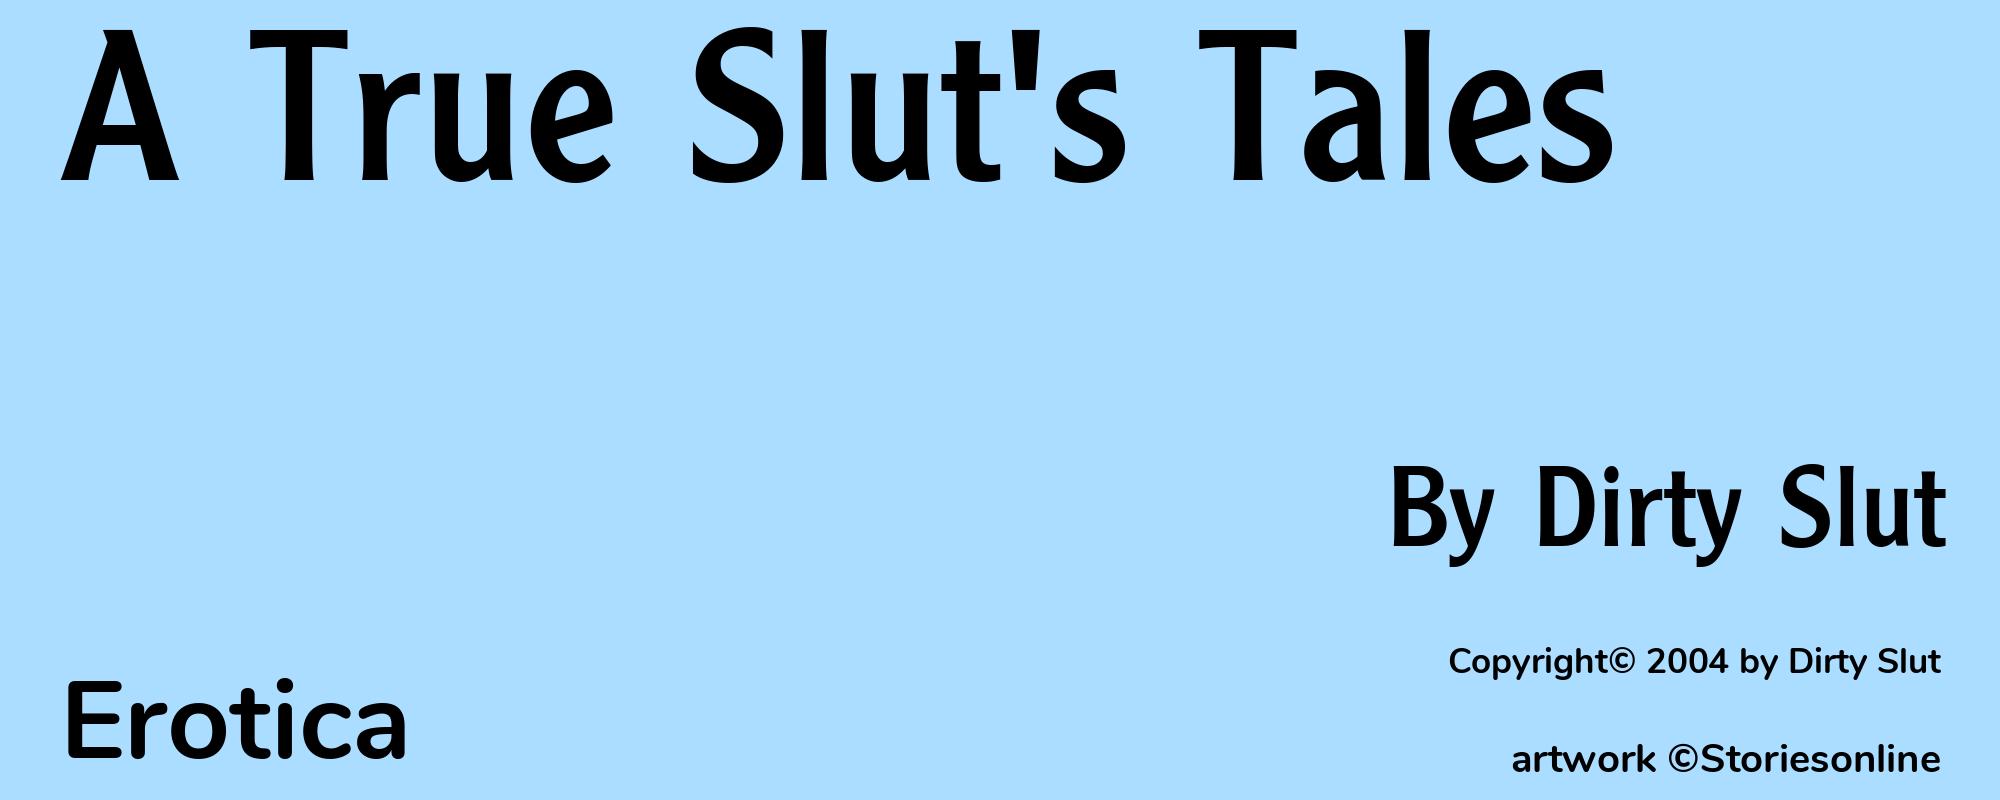 A True Slut's Tales - Cover